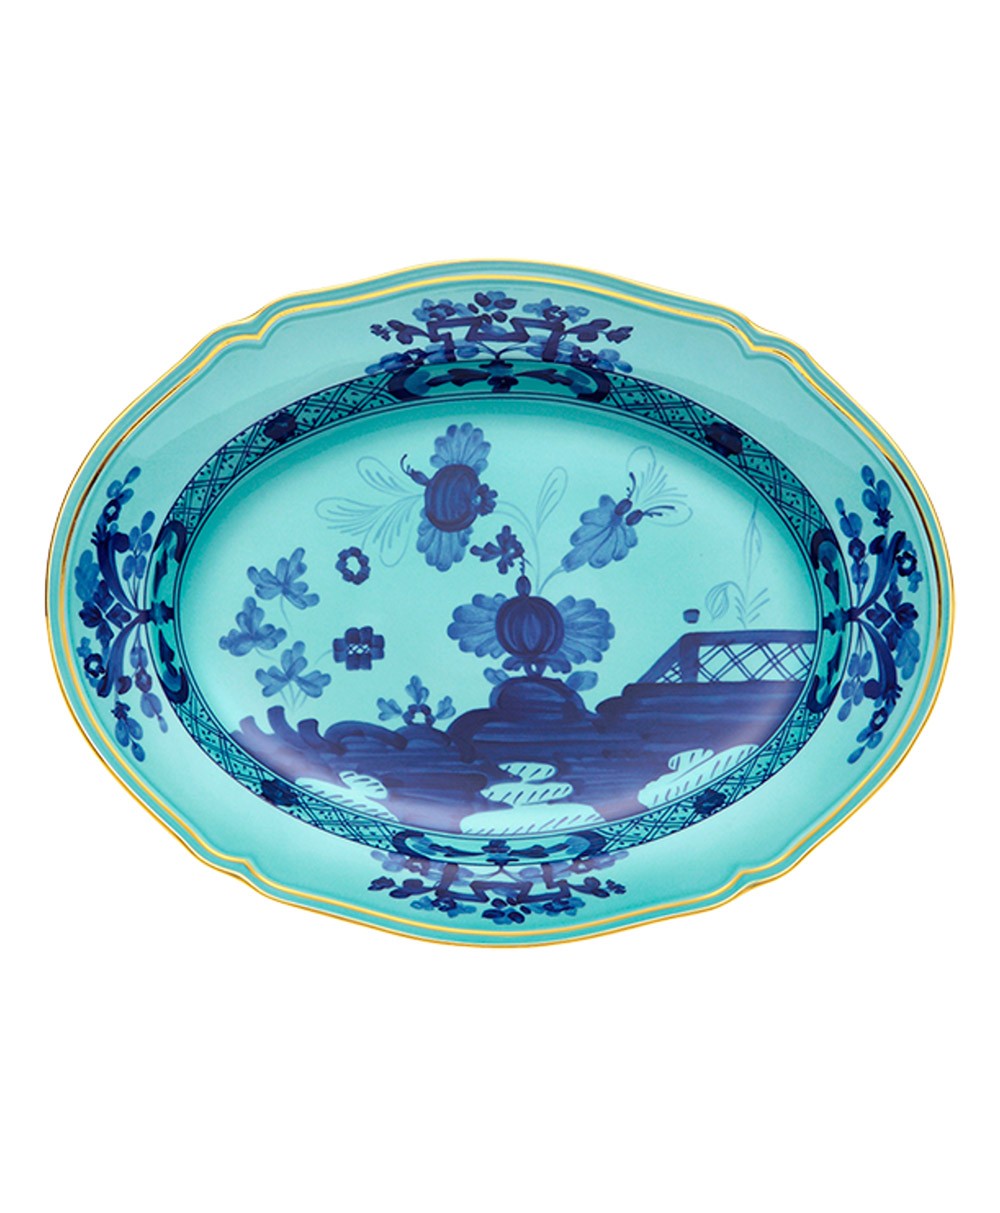 Produktbild "Oriente Iris Platte" von Ginori 1735 im RAUM Concept store